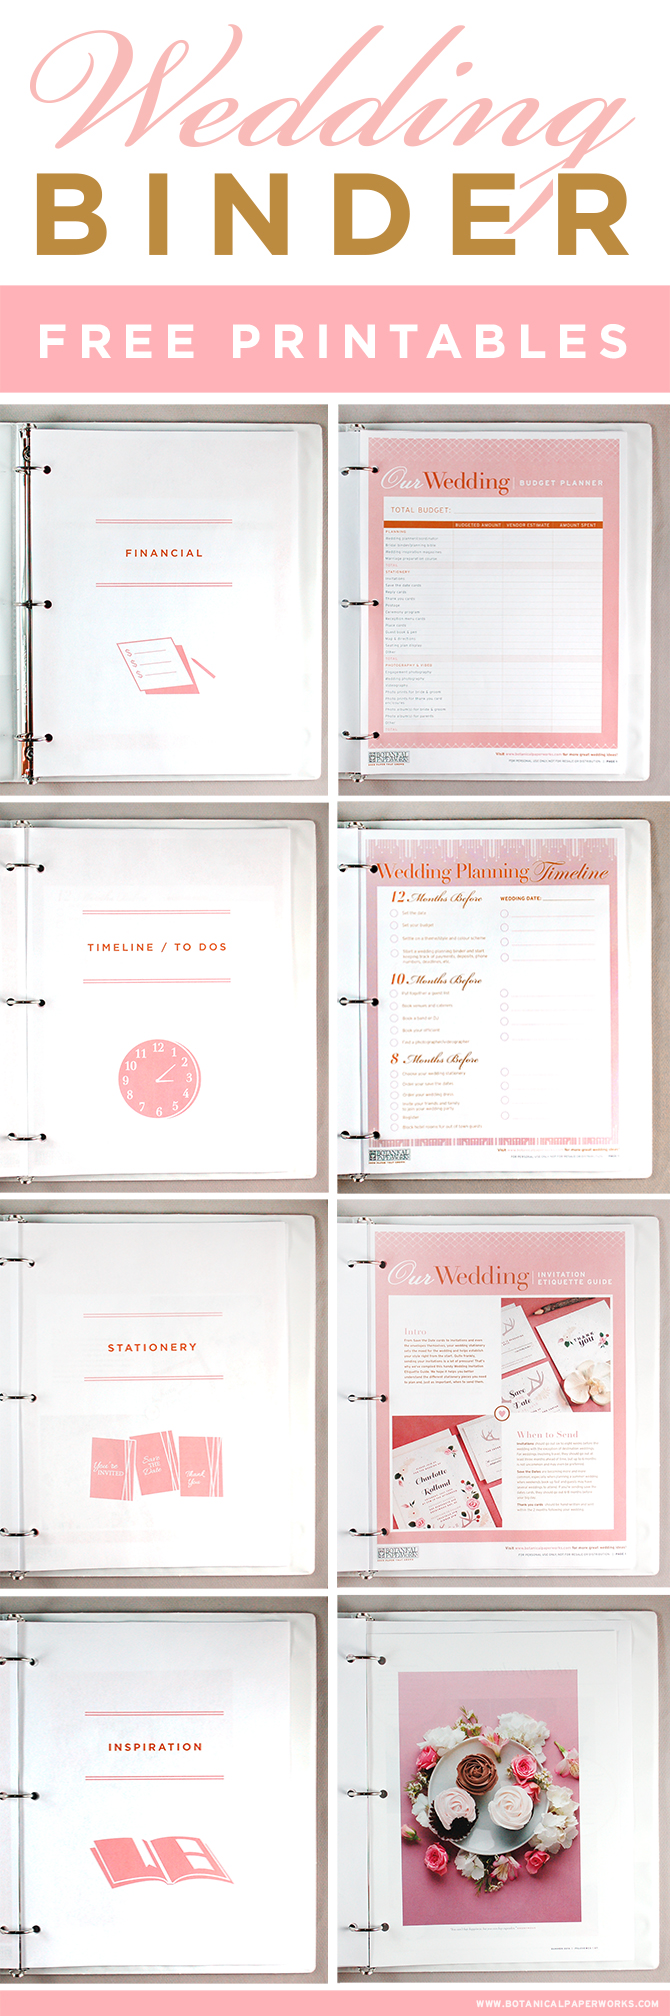 Free Printable Wedding Binder Templates Printable Form Templates And 